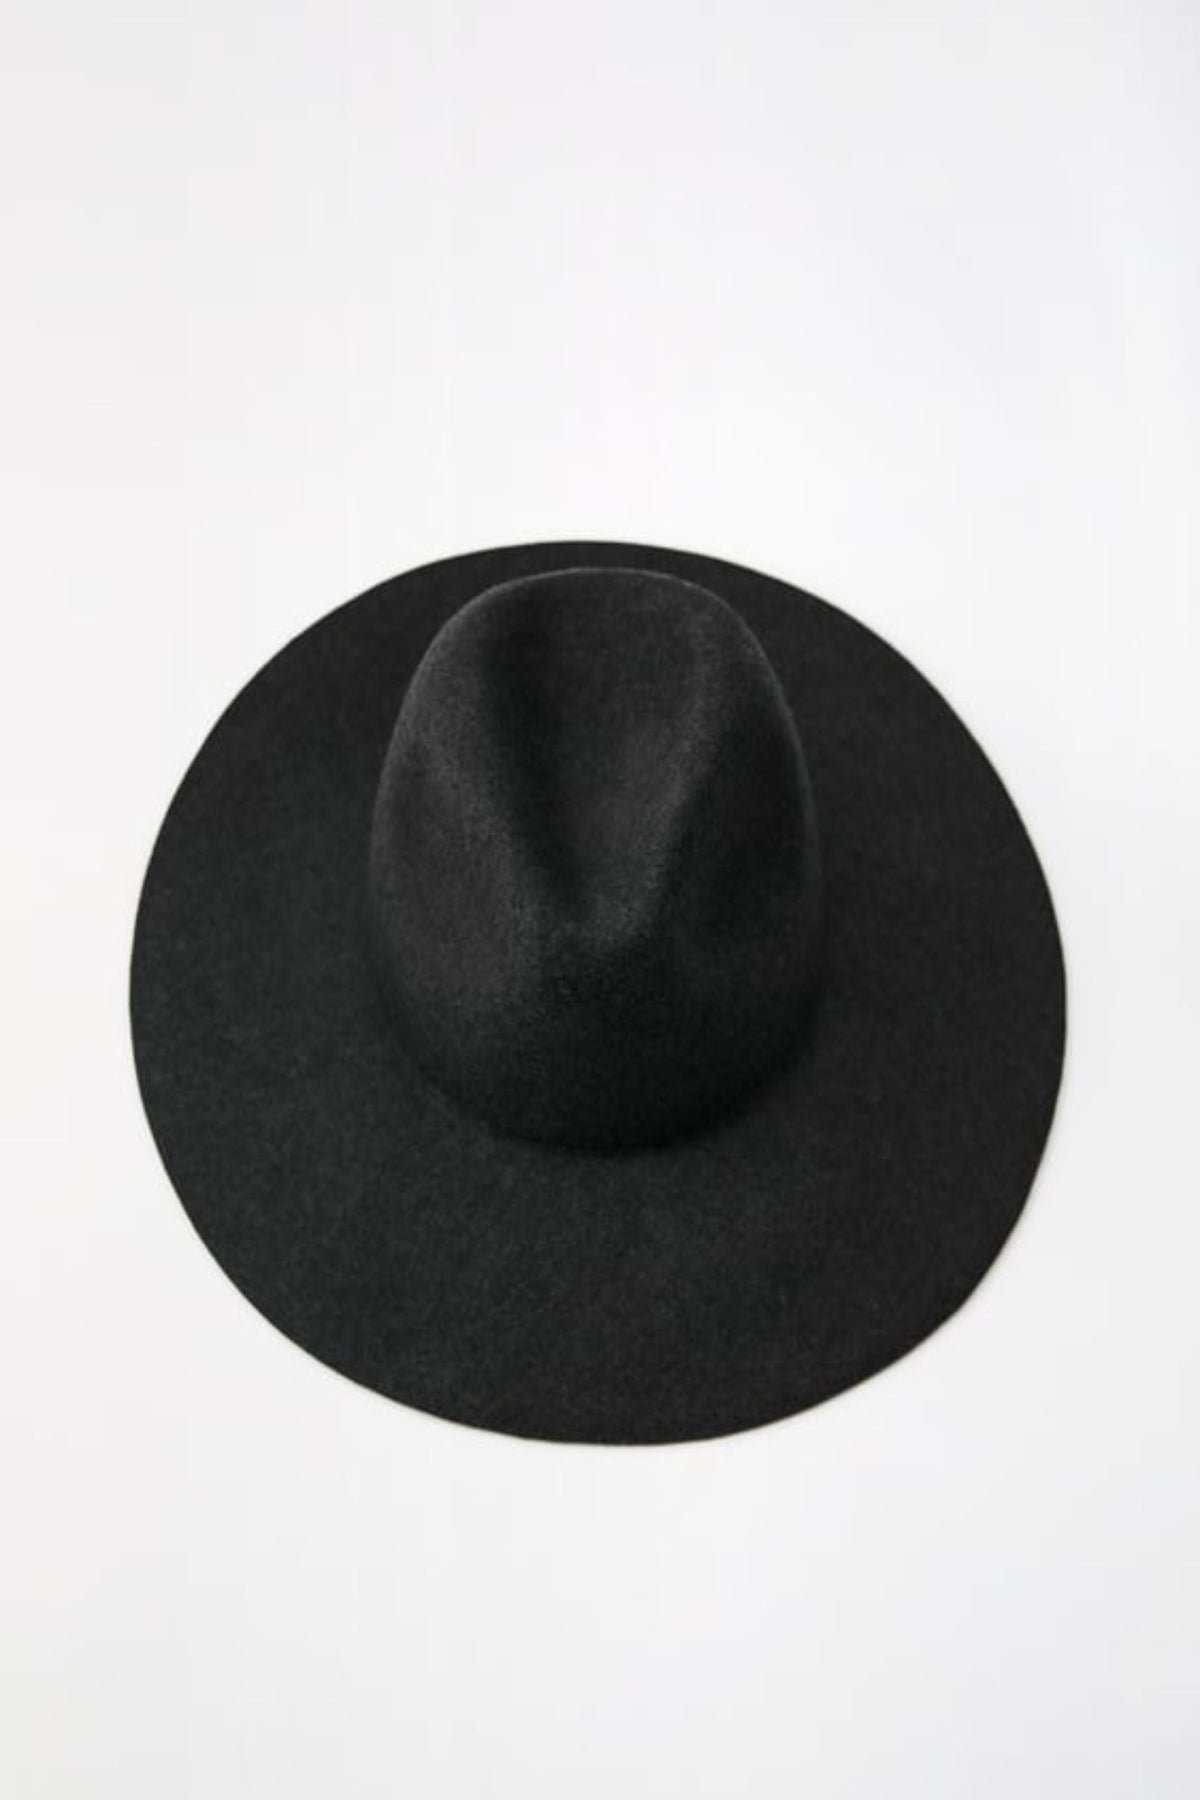 Vintage Wool Hat